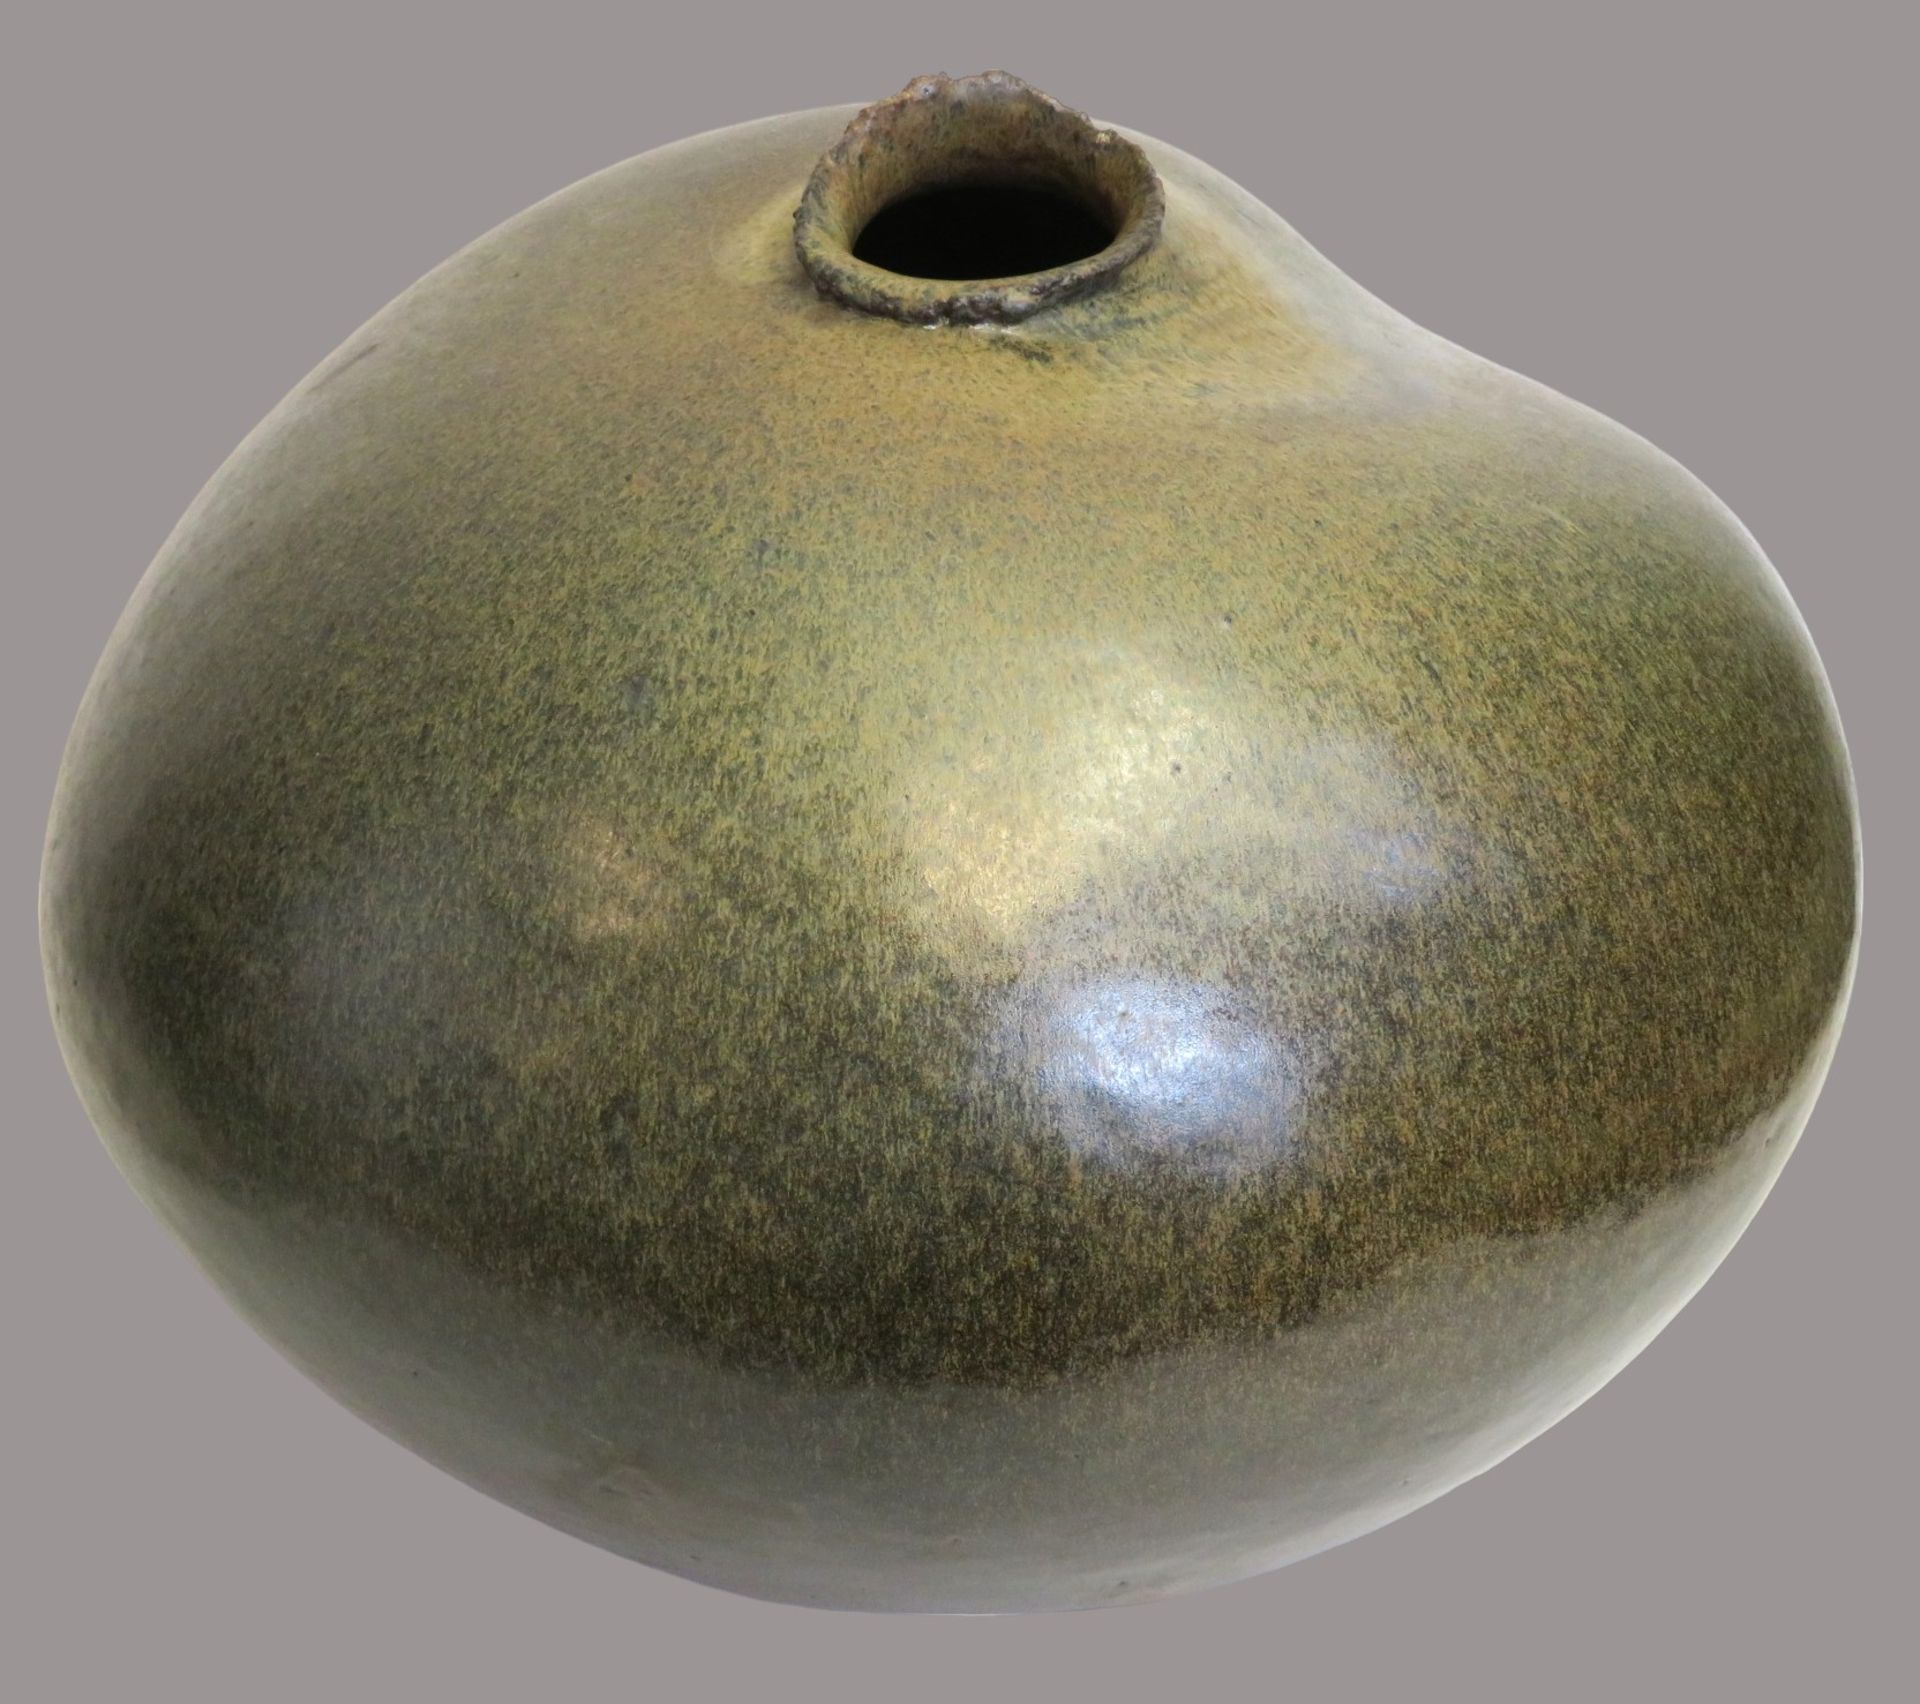 Ikonische Designer Vase, Ton mit grünlich-gräulicher Glasur, im Boden unles sign. "G. Mazzi", h 33 